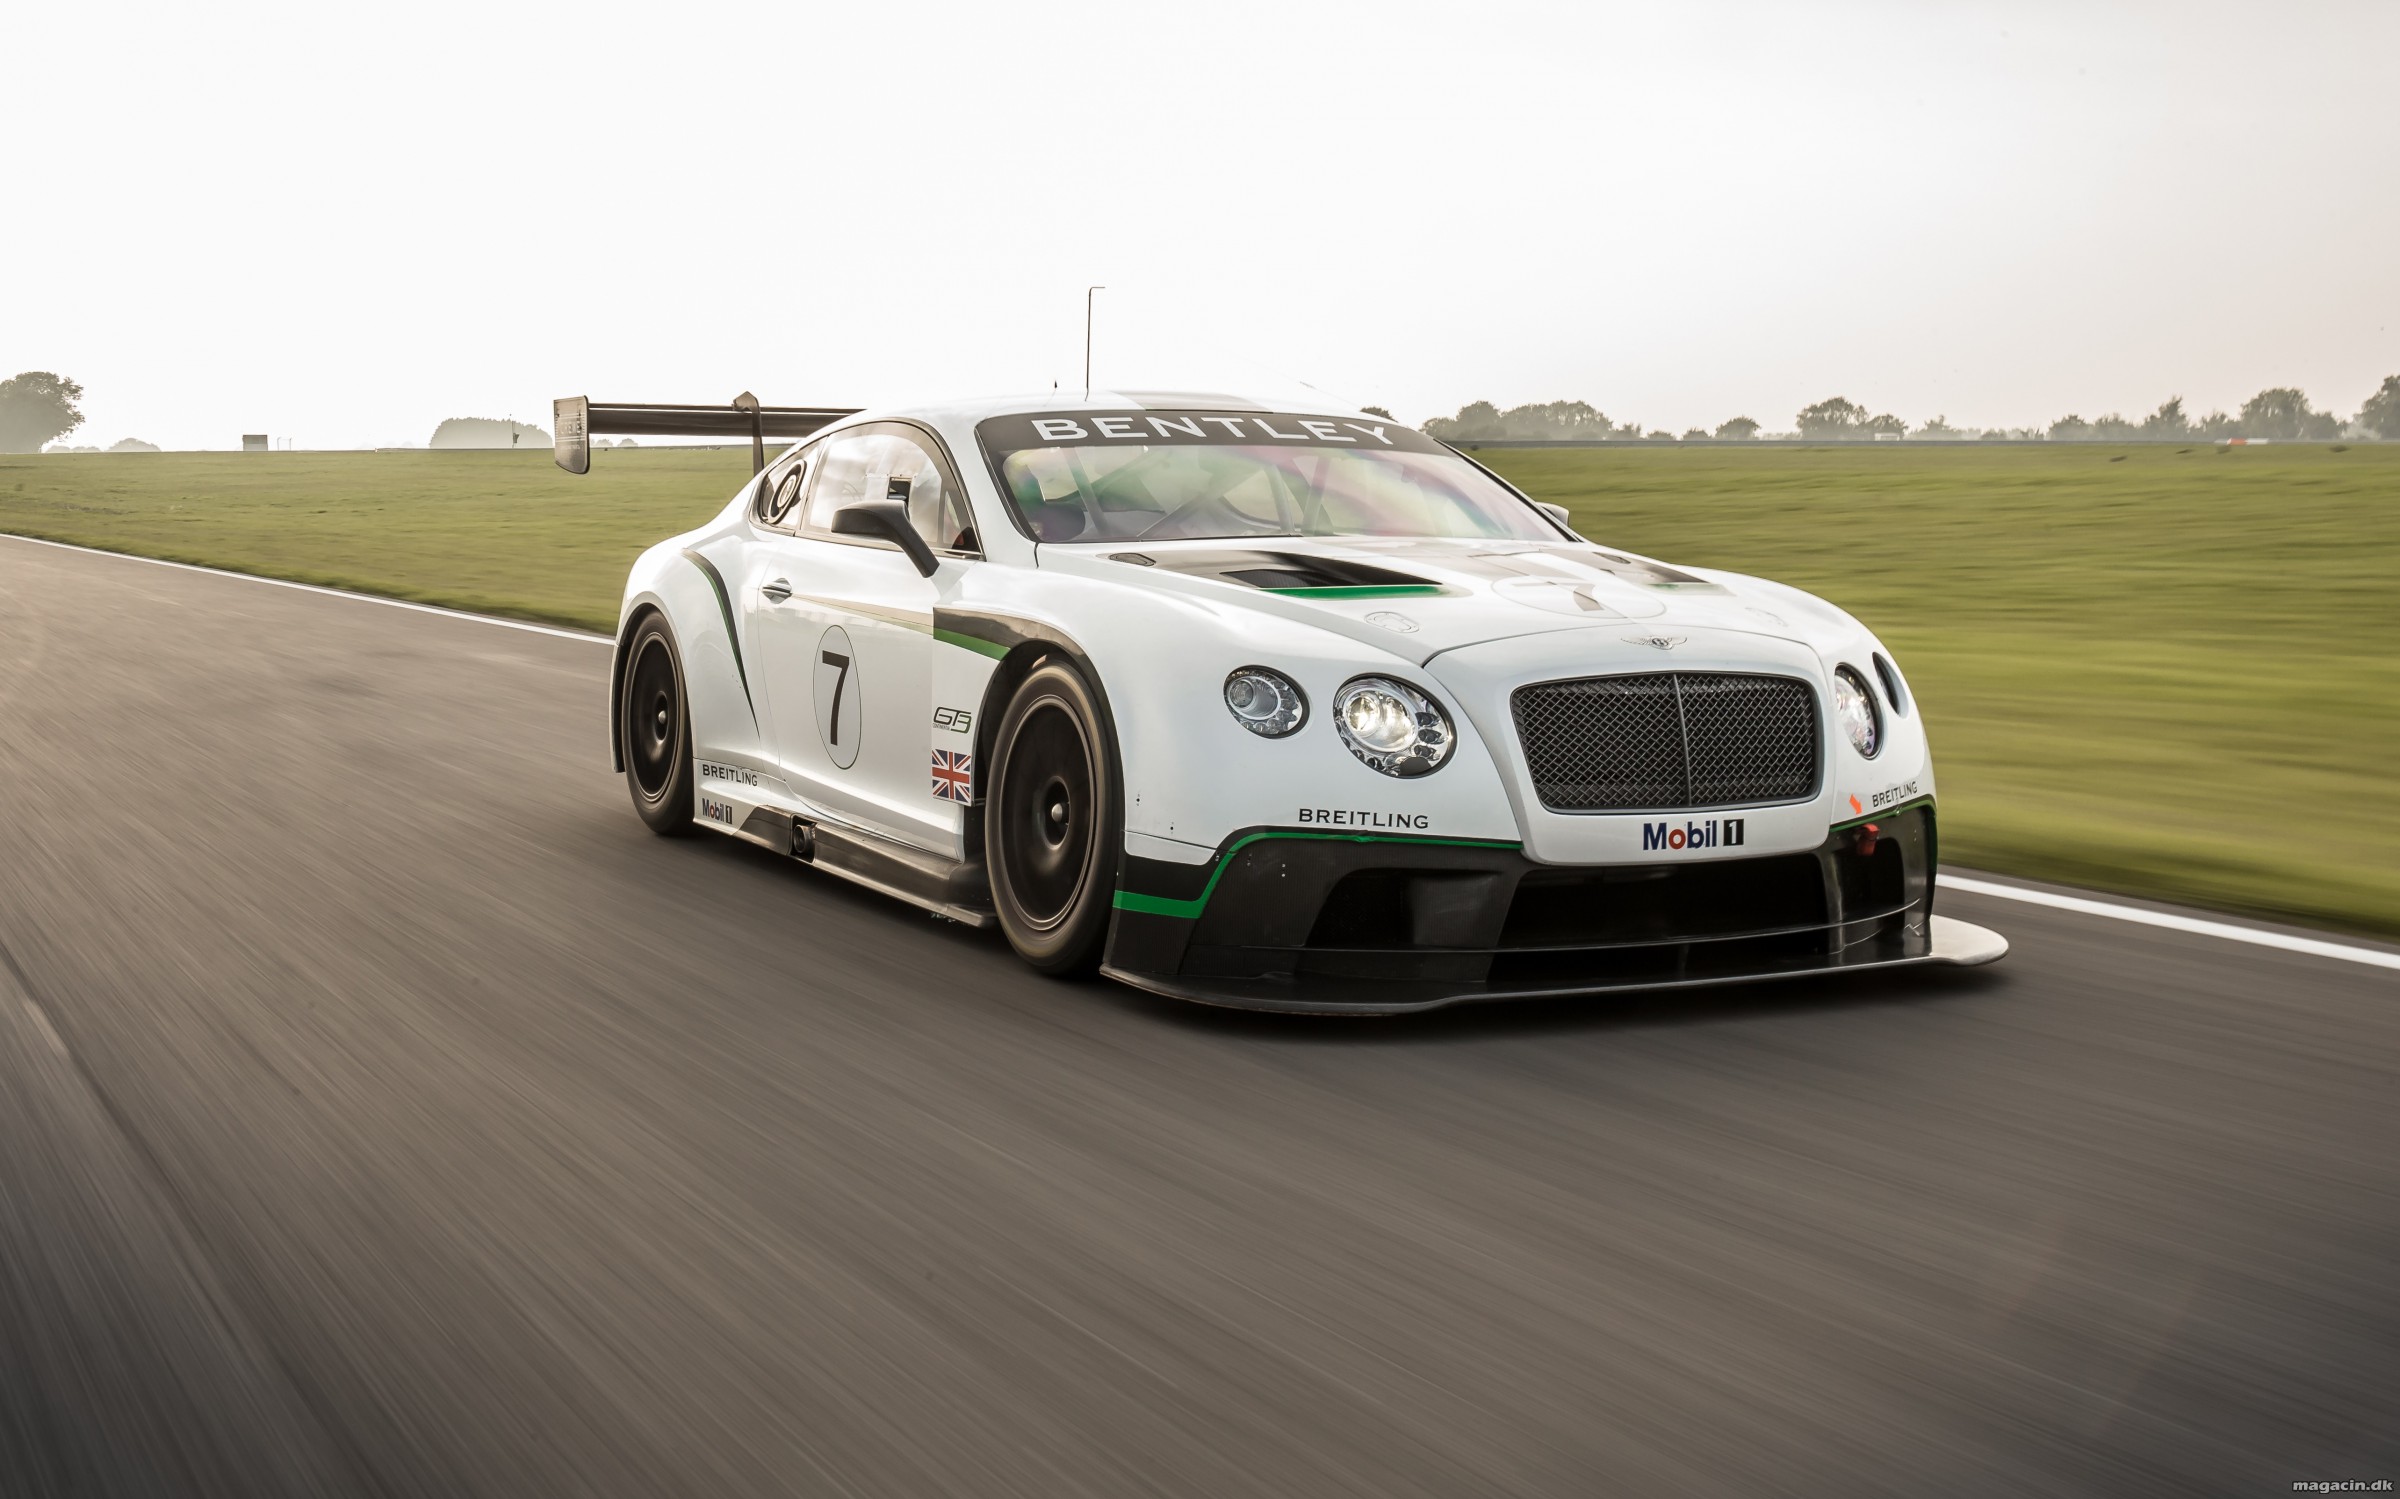 Højdepunkter for Bentley i 2013